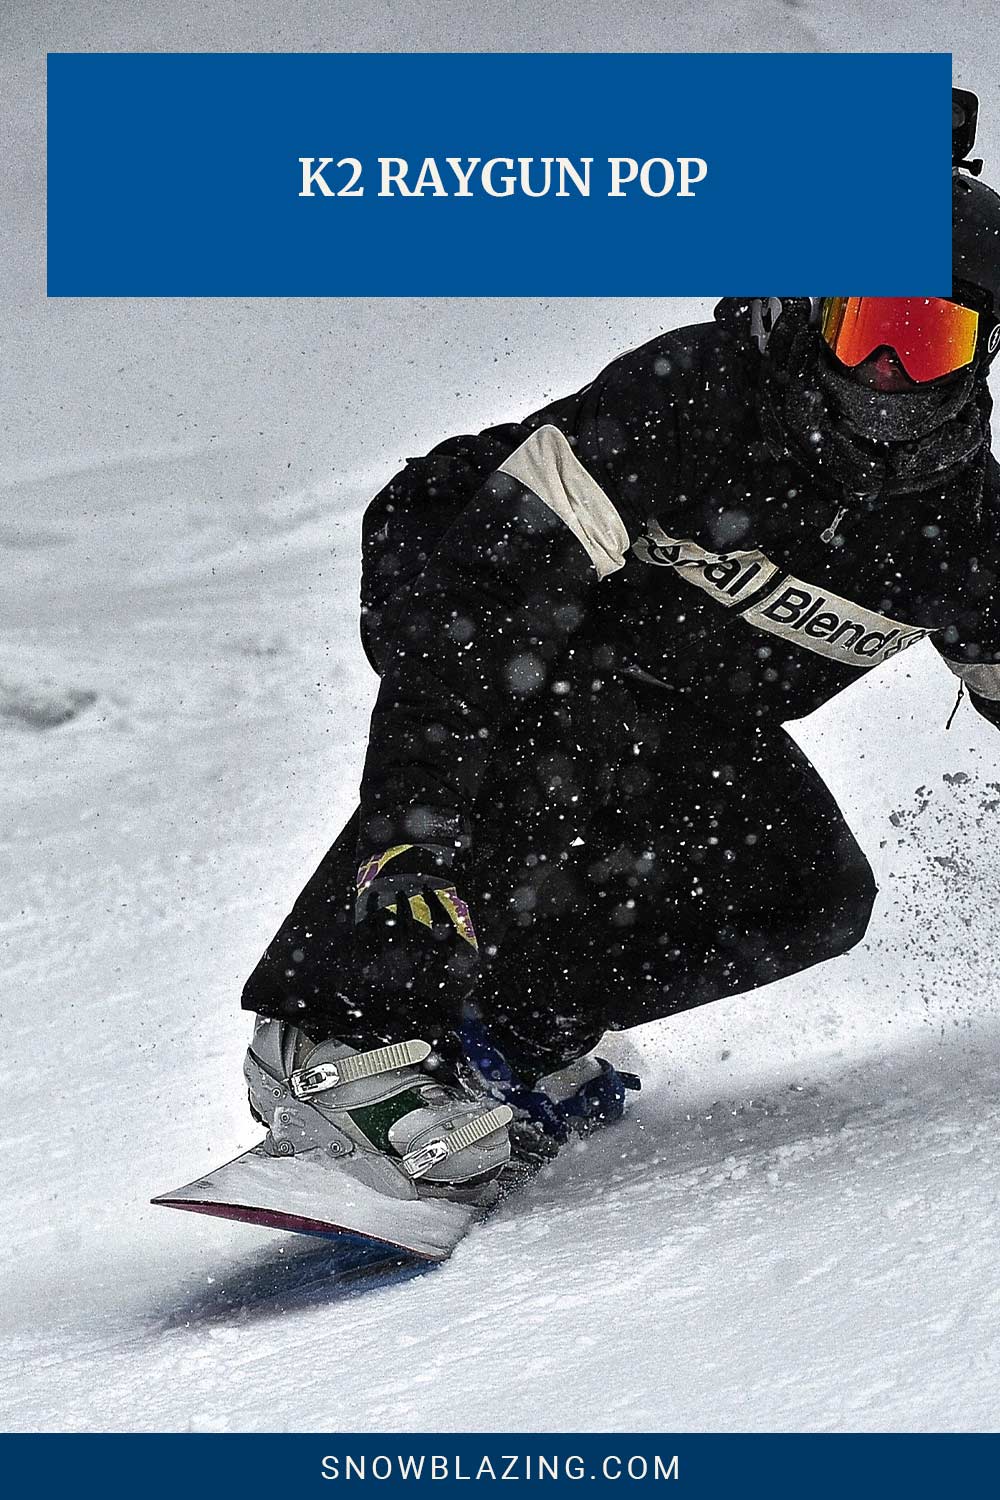 Man in black jacket and helmet snowboarding - K2 Raygun Pop